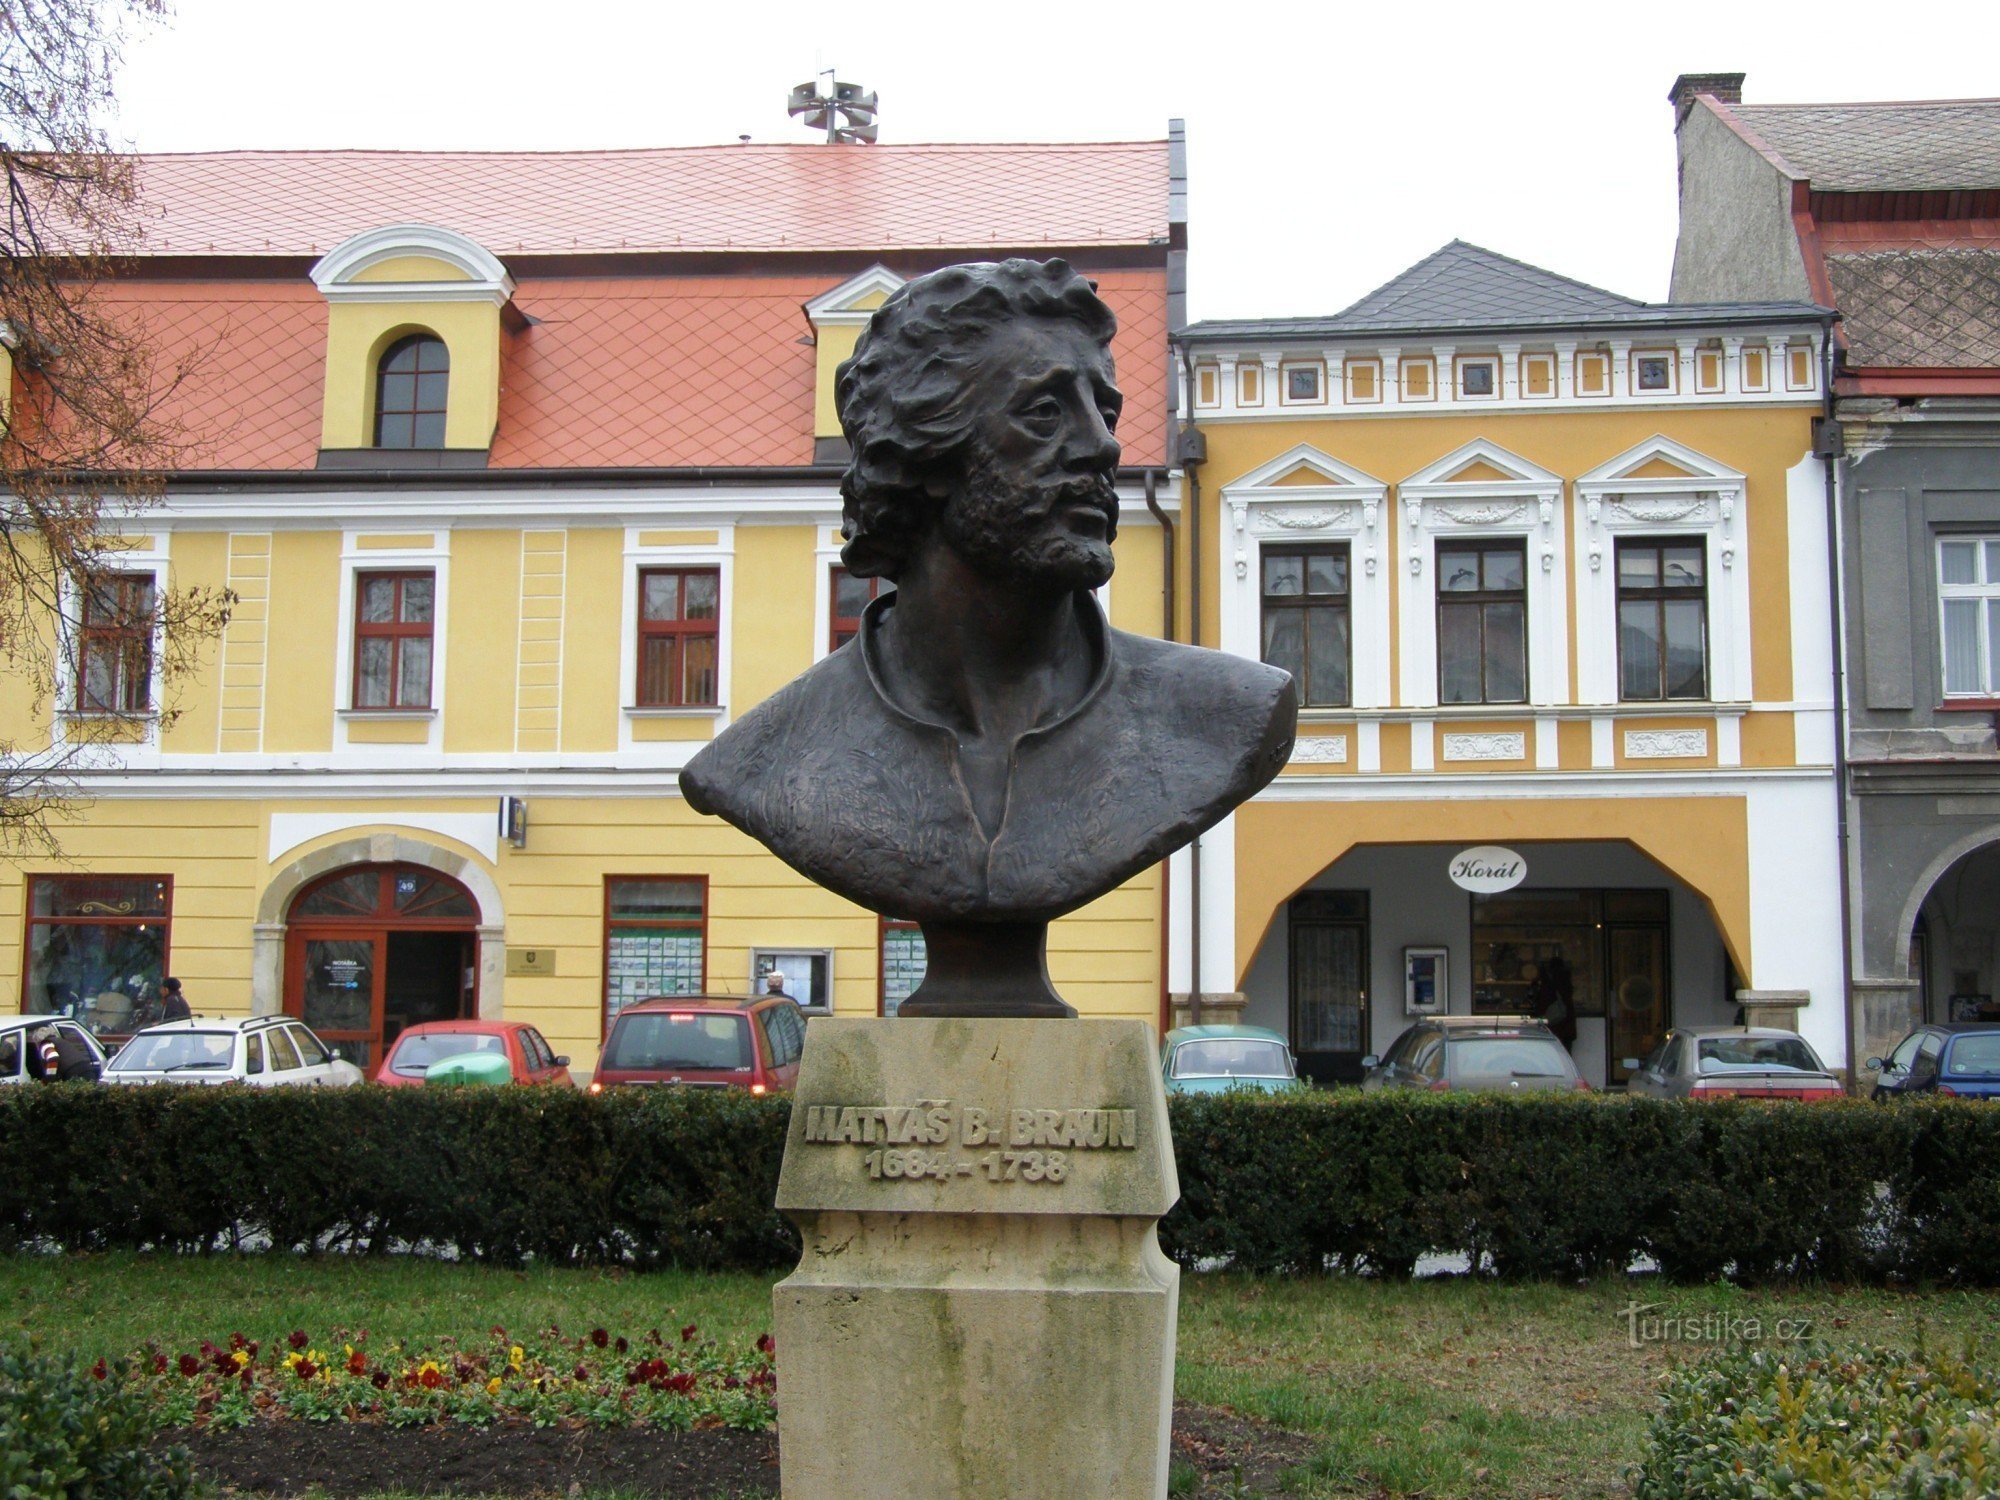 Jaroměř - Plac Armii Czeskiej